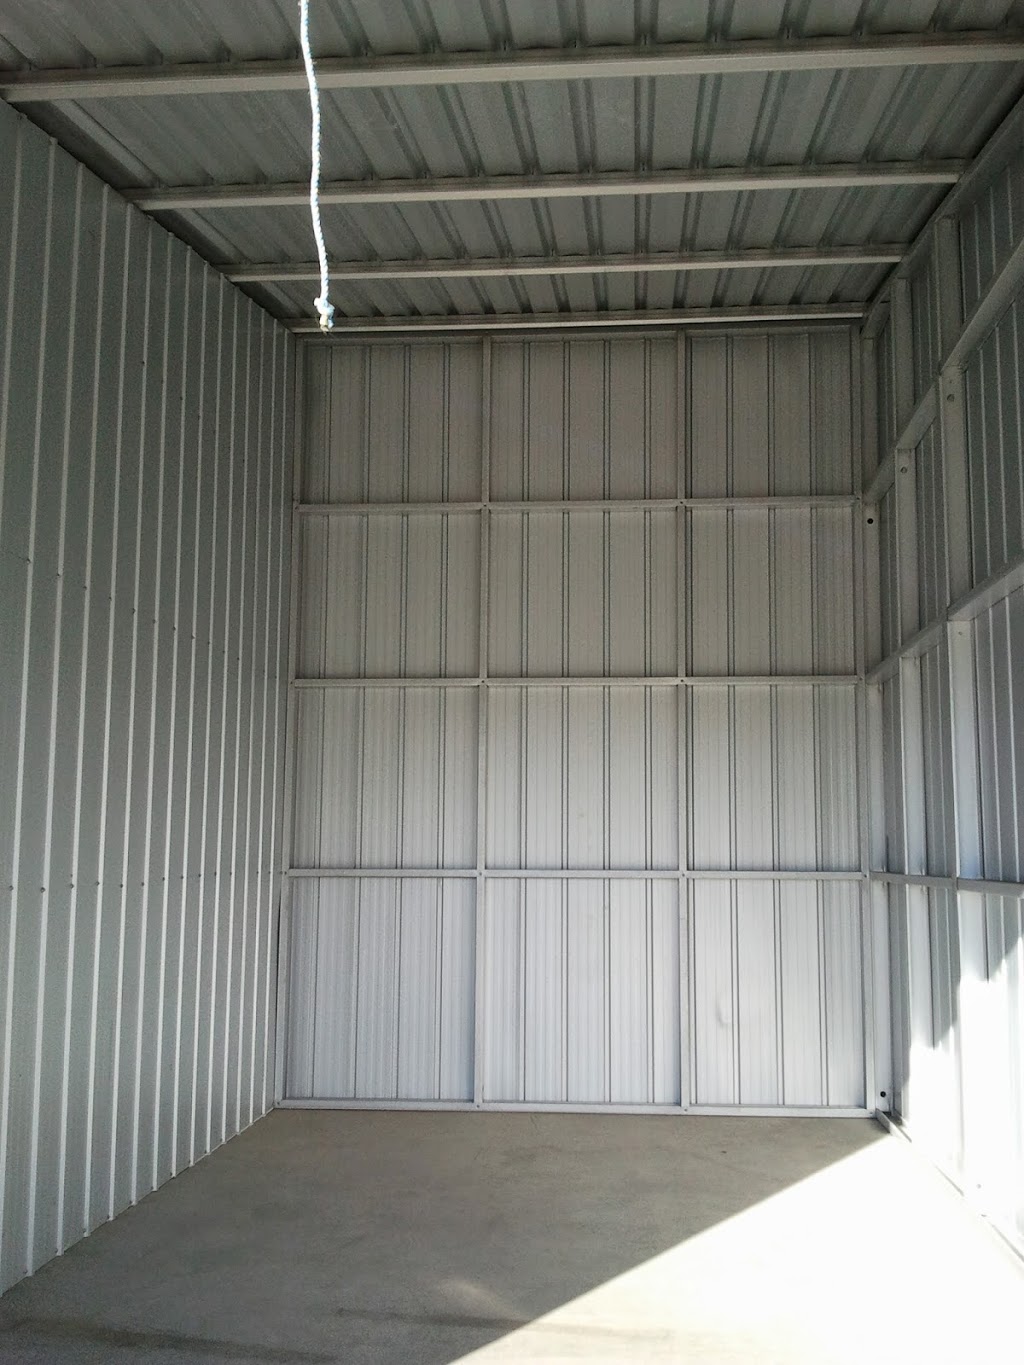 Wynnum Storage | storage | 118 Lindum Rd, Wynnum West QLD 4178, Australia | 0733484170 OR +61 7 3348 4170